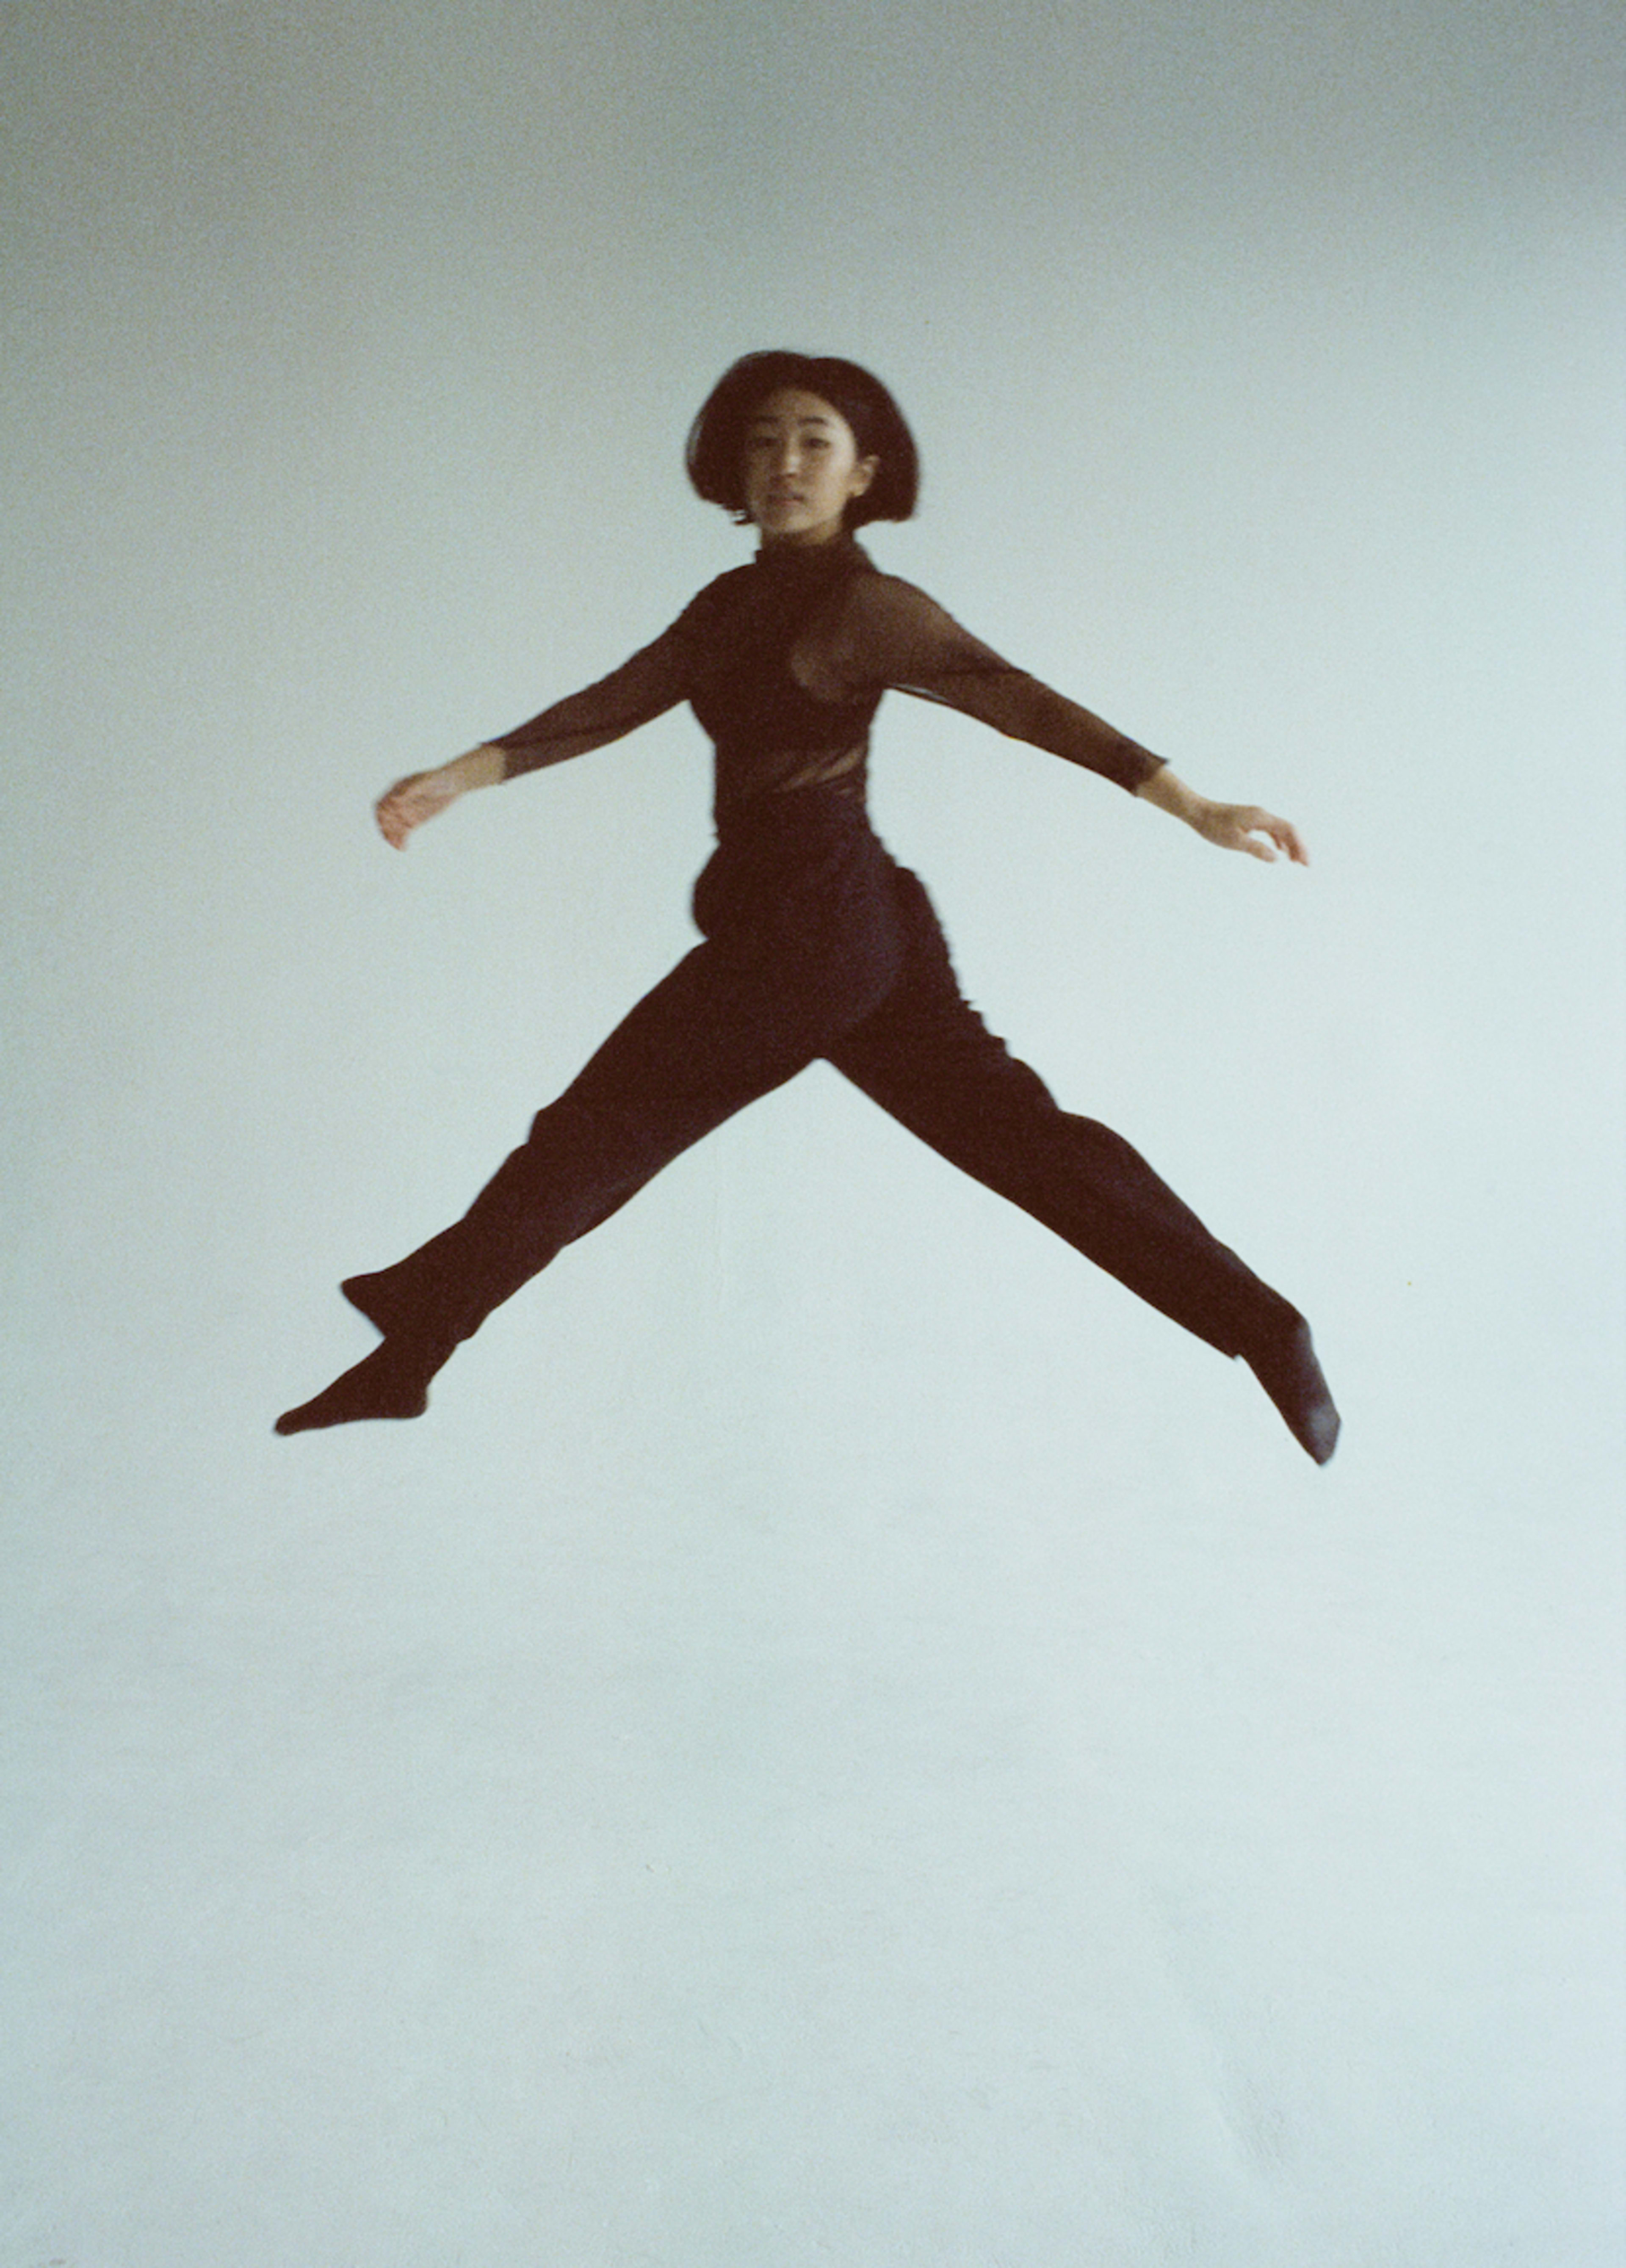 Una mujer vestida de negro saltando durante una sesión de fotos.